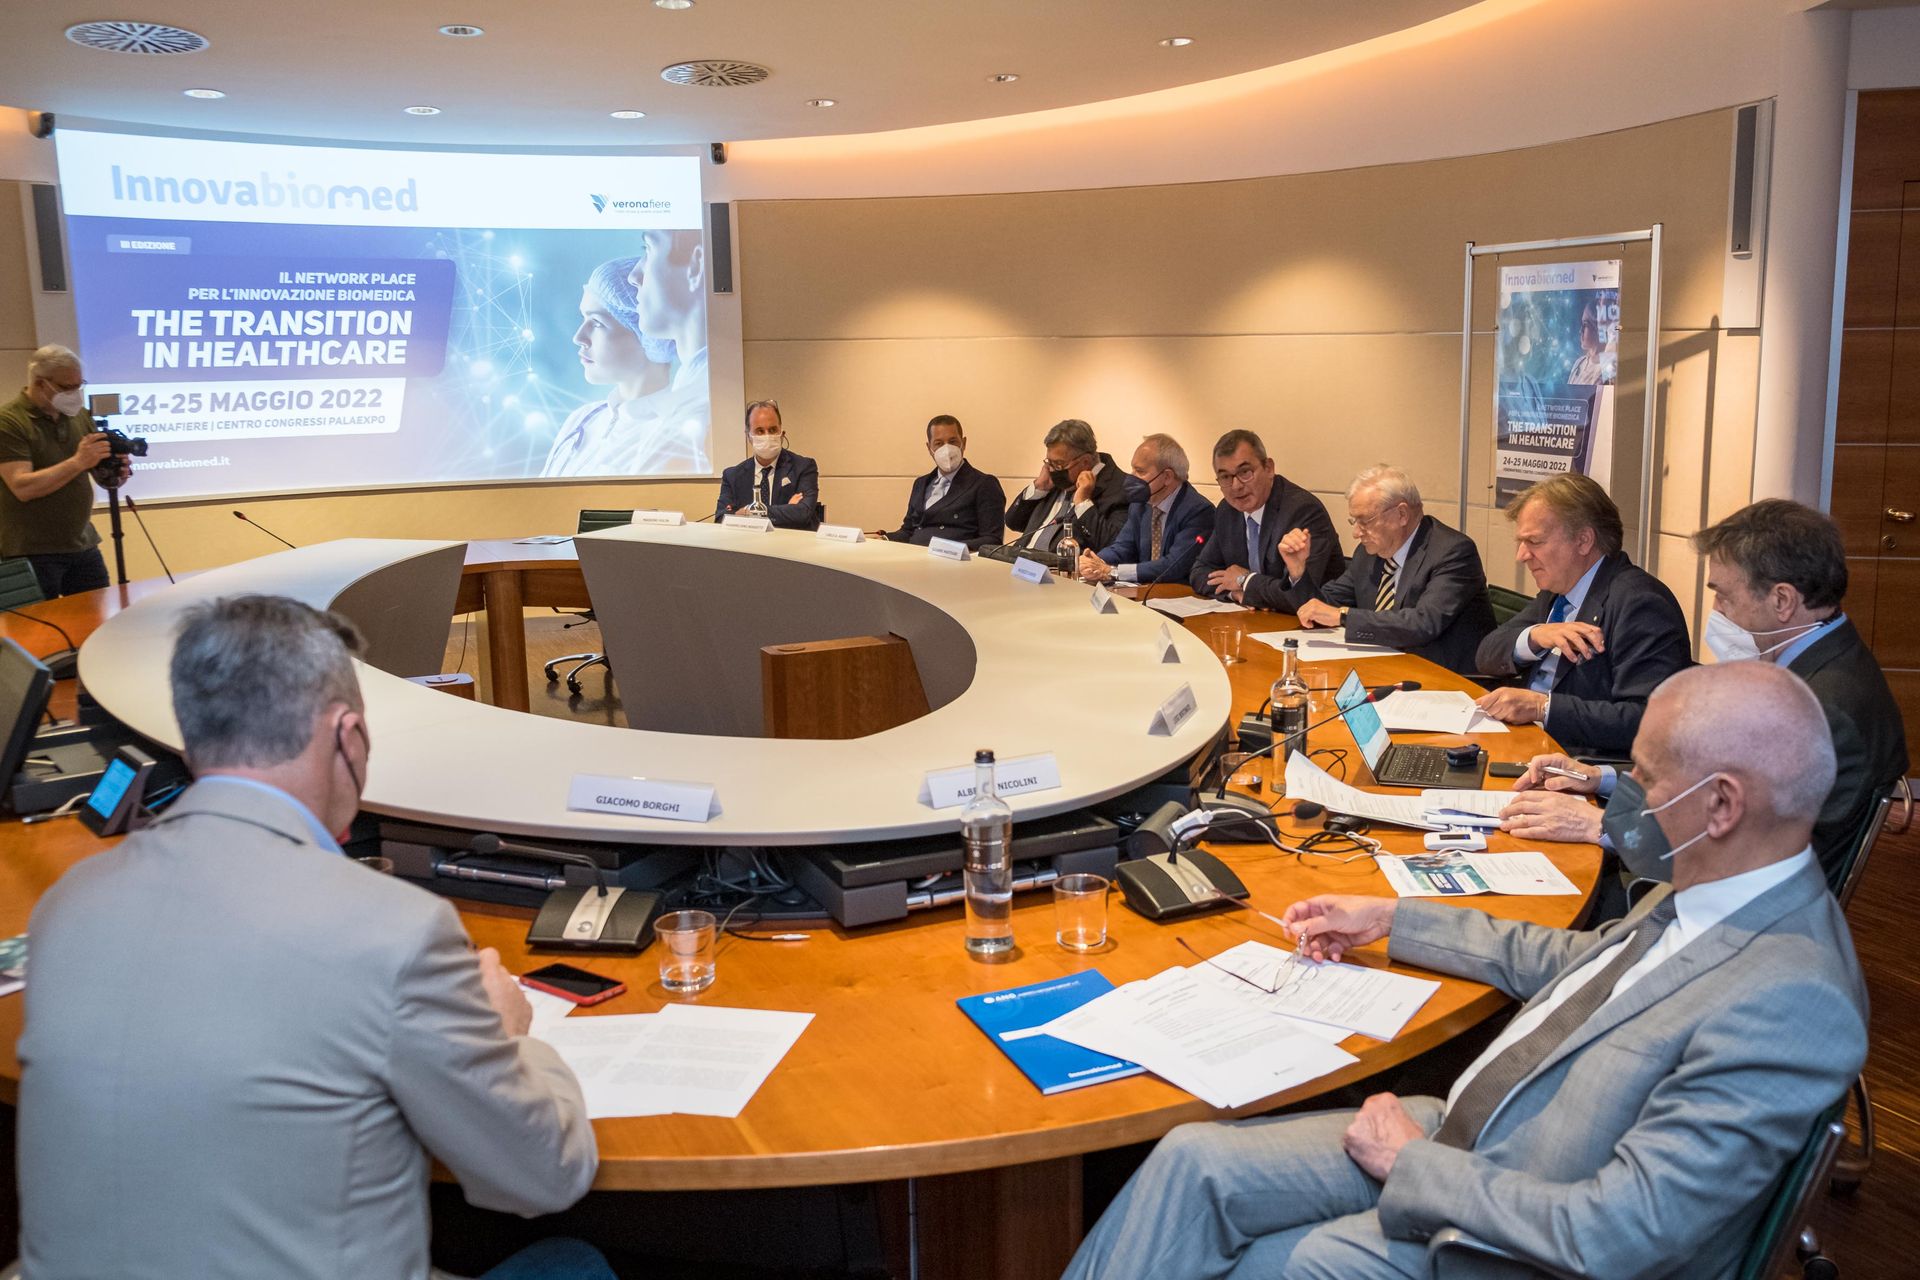 La conferenza stampa di presentazione dell'edizione 2022 di "Innovabiomed", prevista il 24 e 25 maggio al Palexpo di Verona